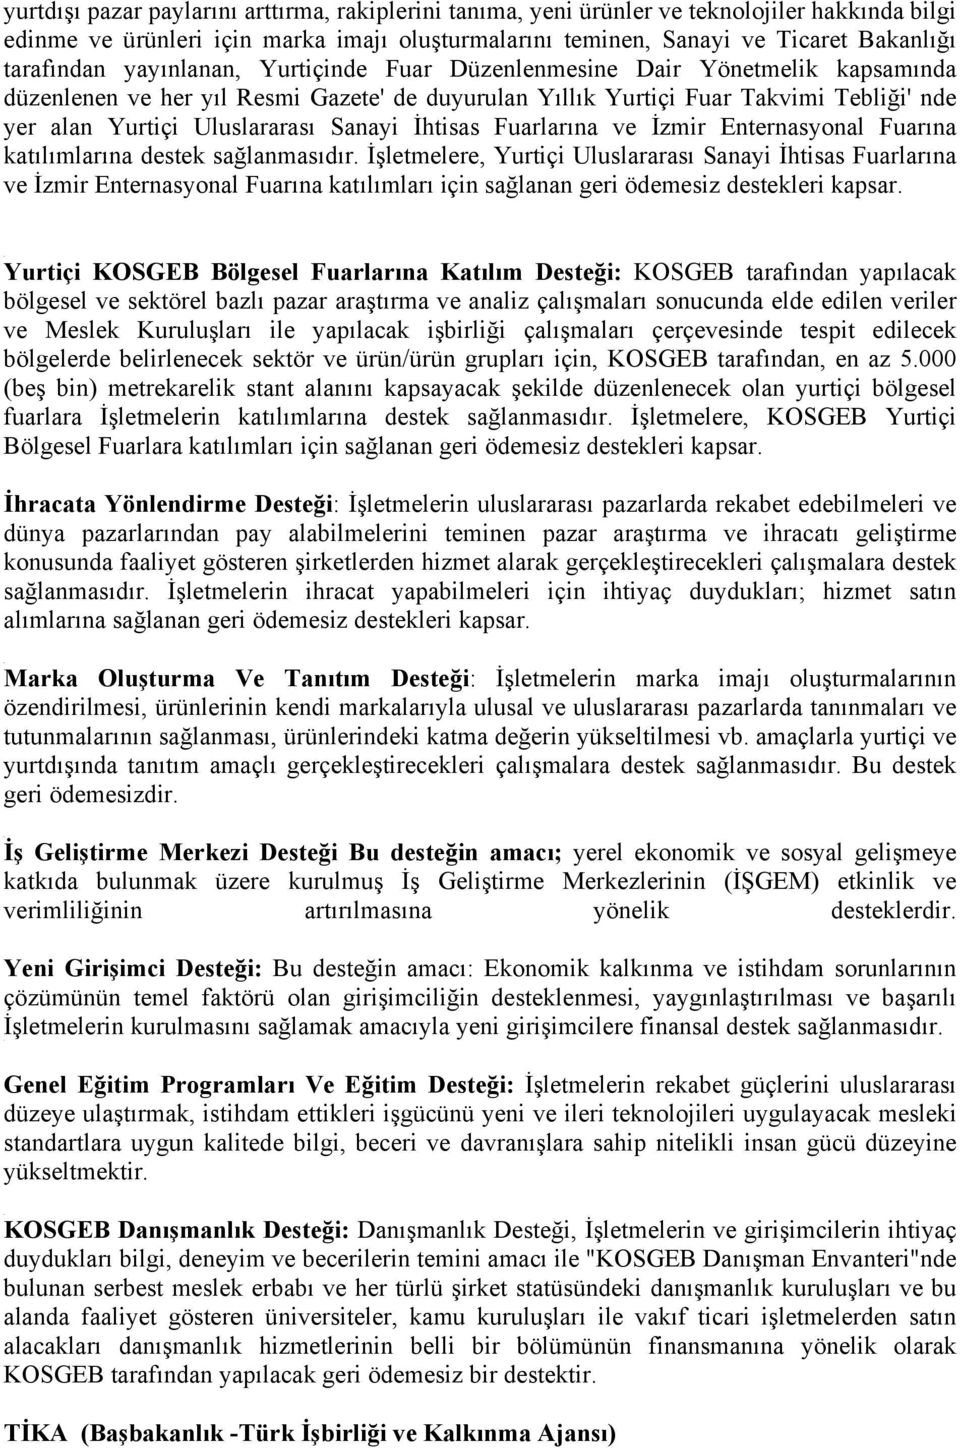 İhtisas Fuarlarına ve İzmir Enternasyonal Fuarına katılımlarına destek sağlanmasıdır.